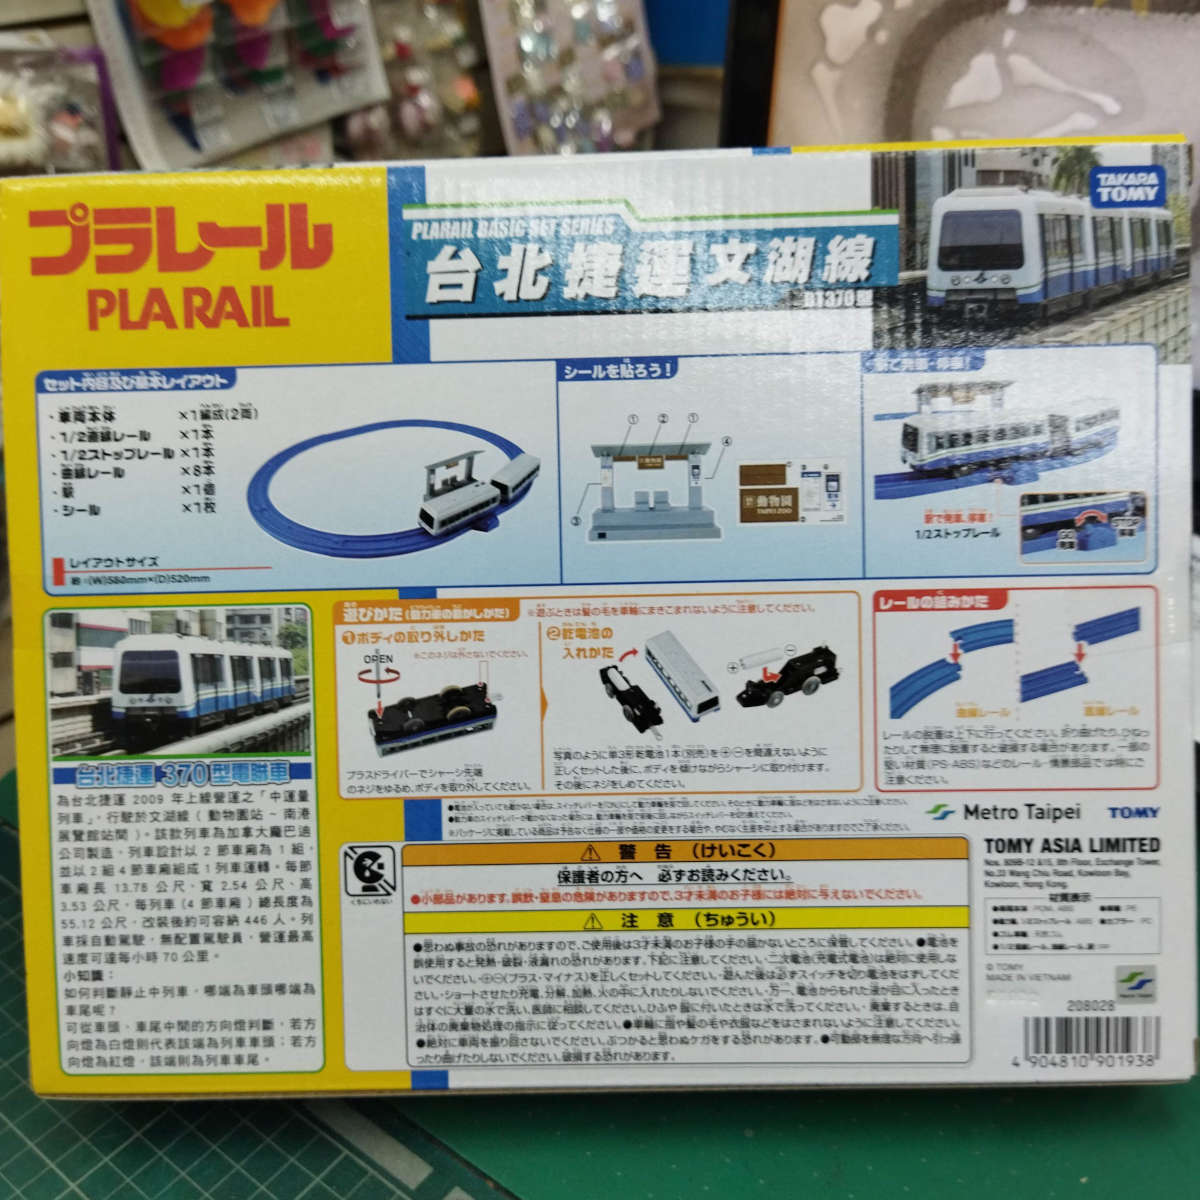 Mô hình tàu điện Takara Tomy ES-09 Nankai Rapi:t chạy pin loại to